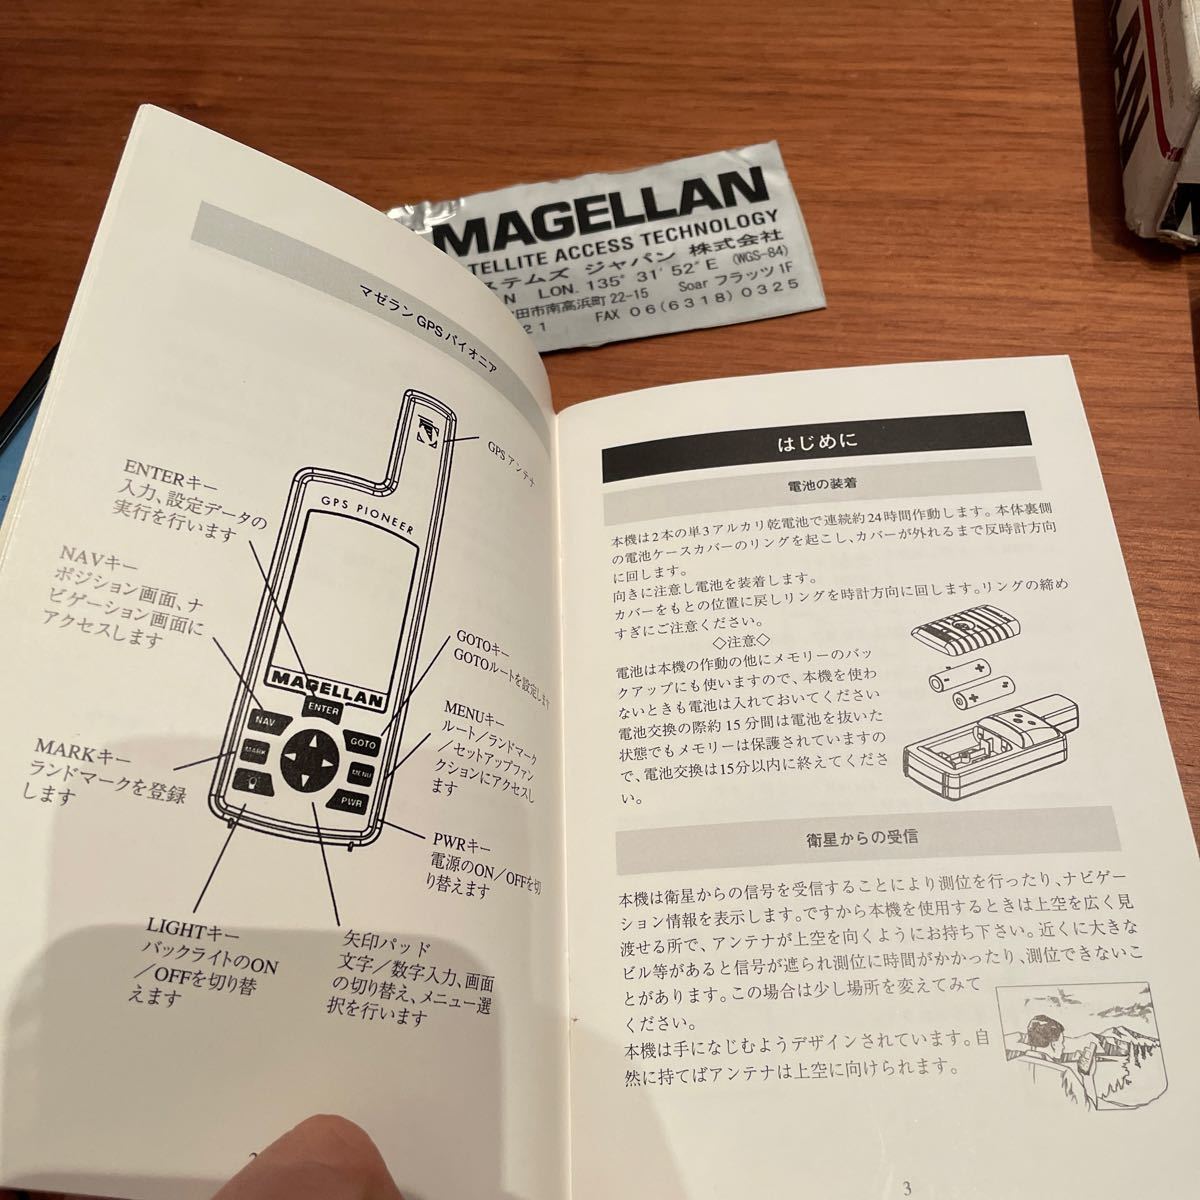 MAGELLAN GPS PIONEER снят с производства товар редкий товар новый товар не использовался протестирован Япония стандартный импортные товары Magellan система z в наличии compact GPS